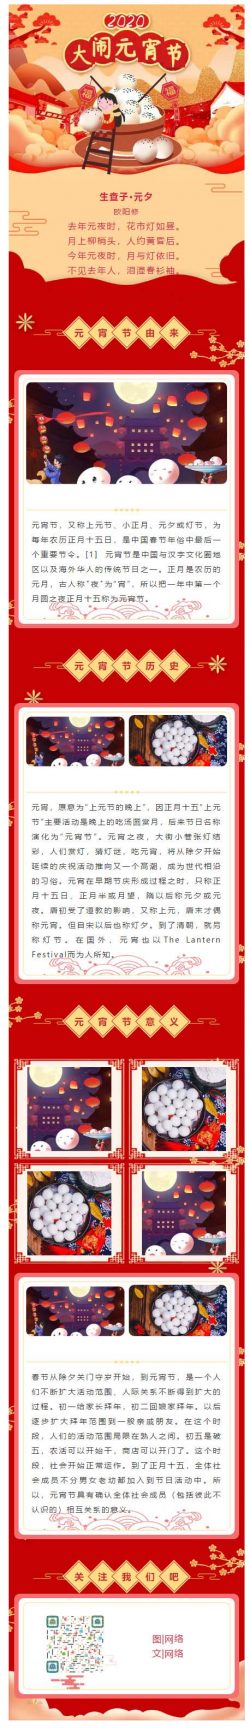 元宵节传统节日正月十五红色喜庆风格模板微信图文模板公众号推文素材